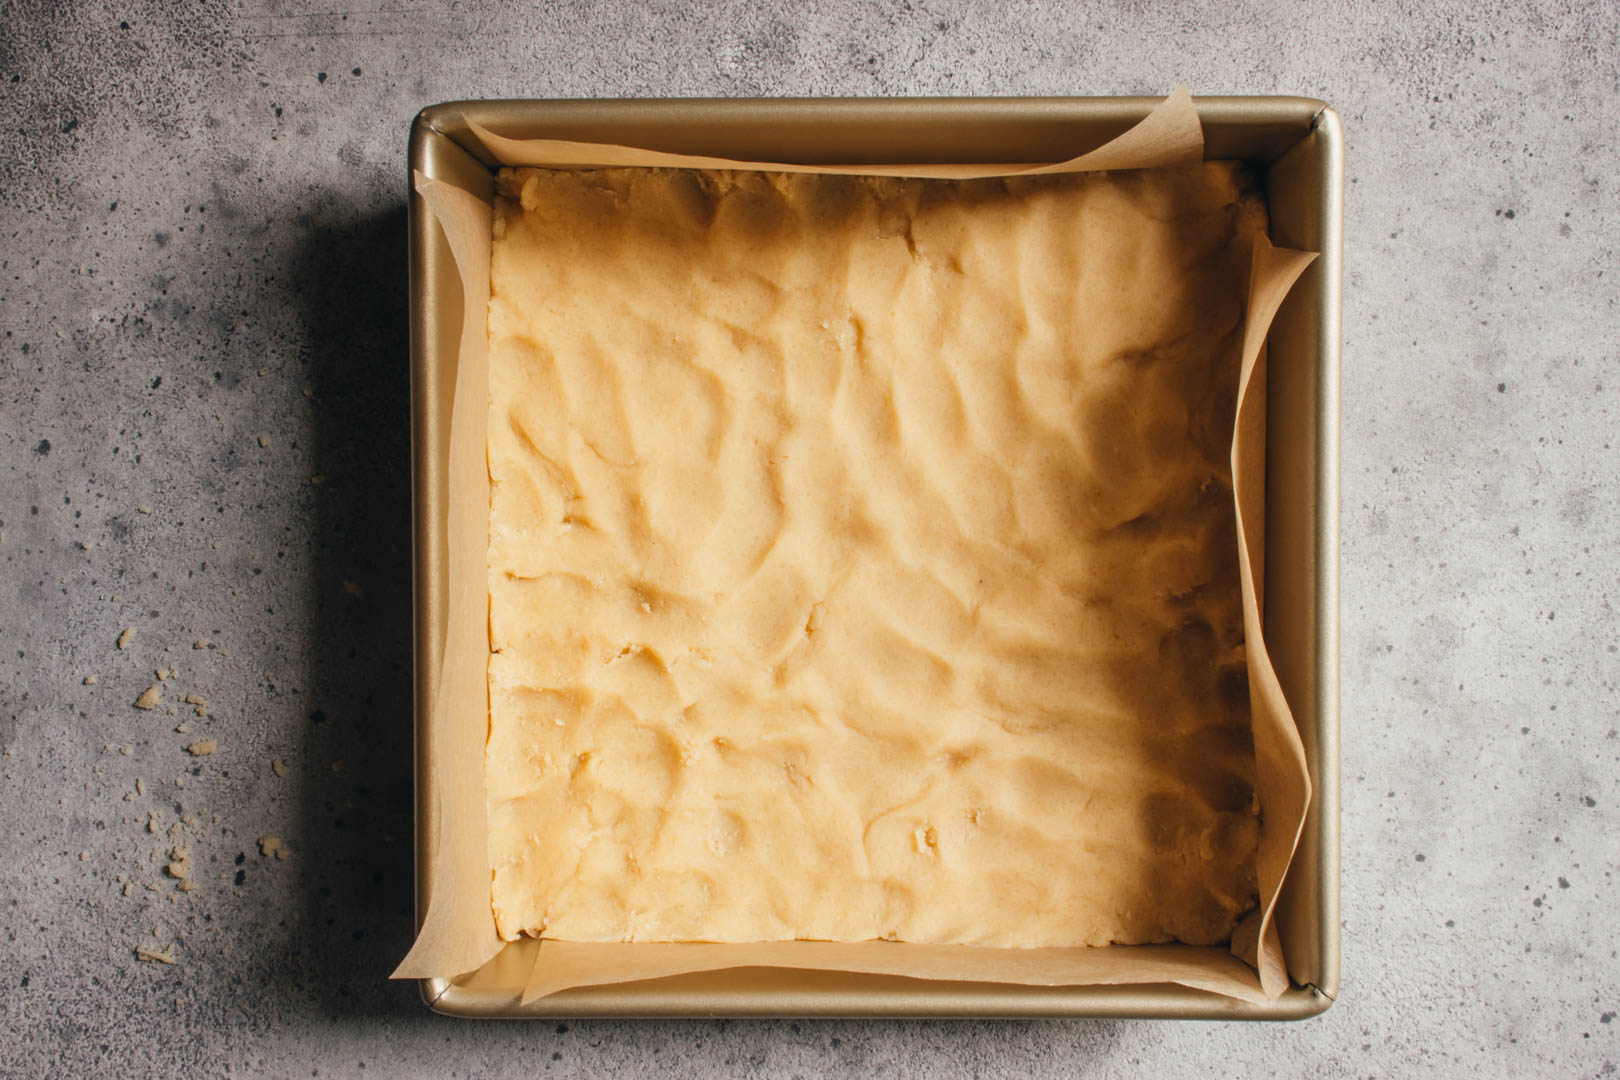 press the shortbread dough into a square baking pan